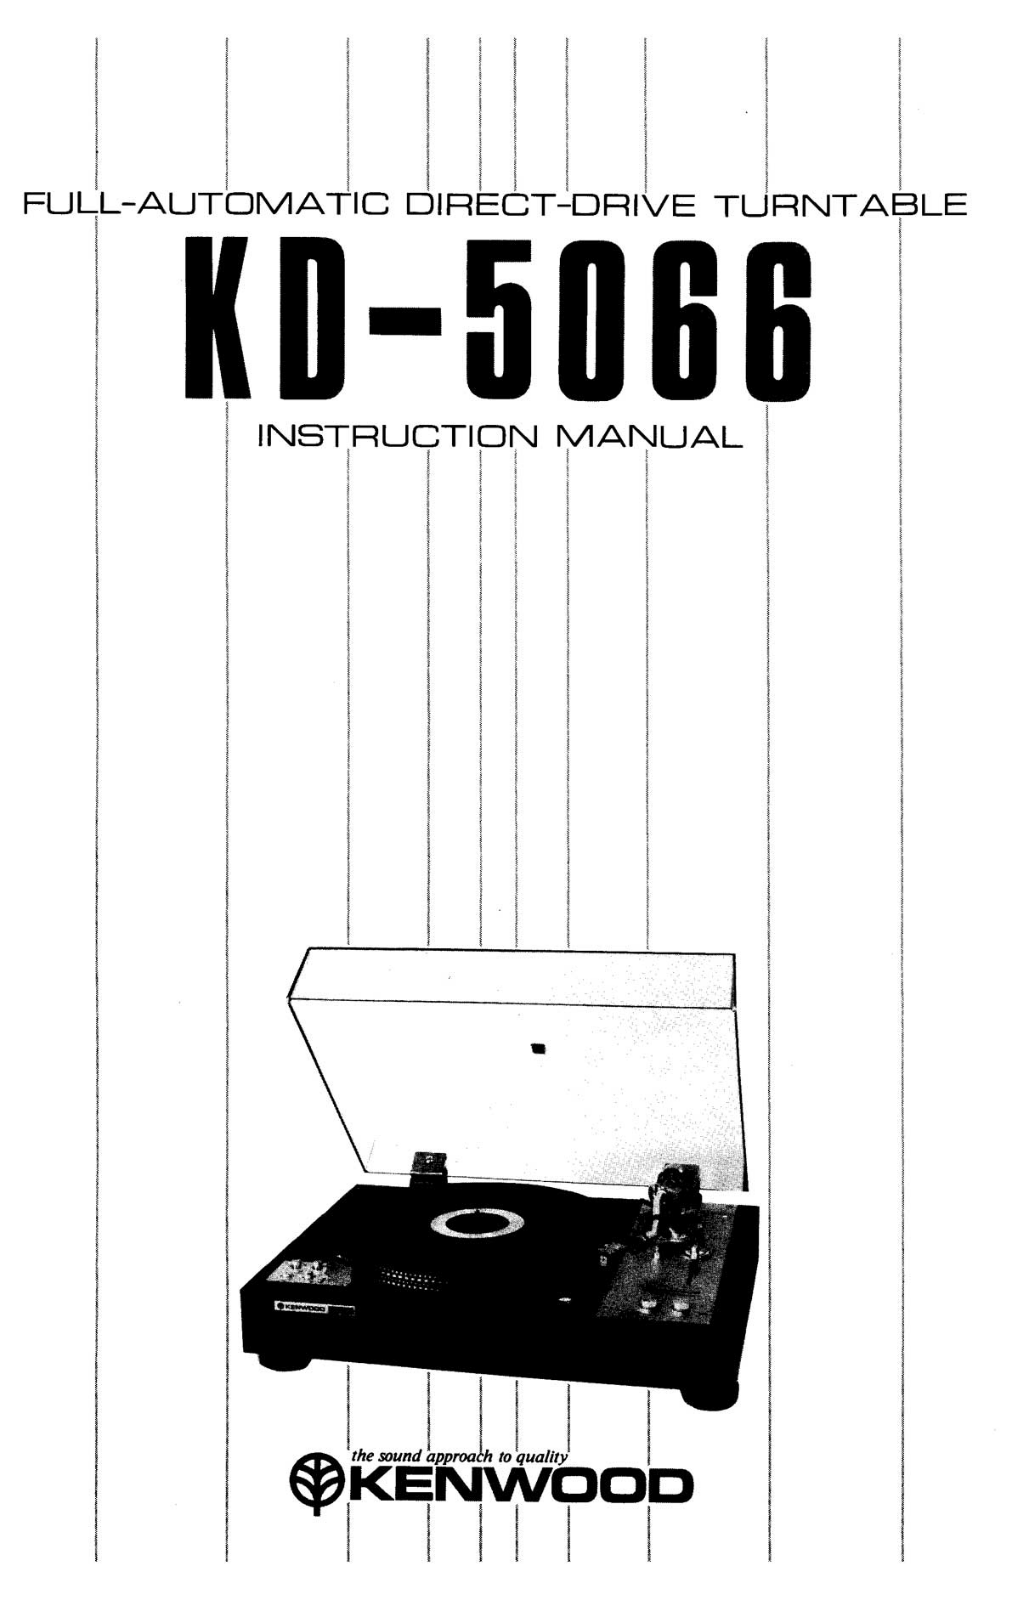 Kenwood KD-5066 Owners manual